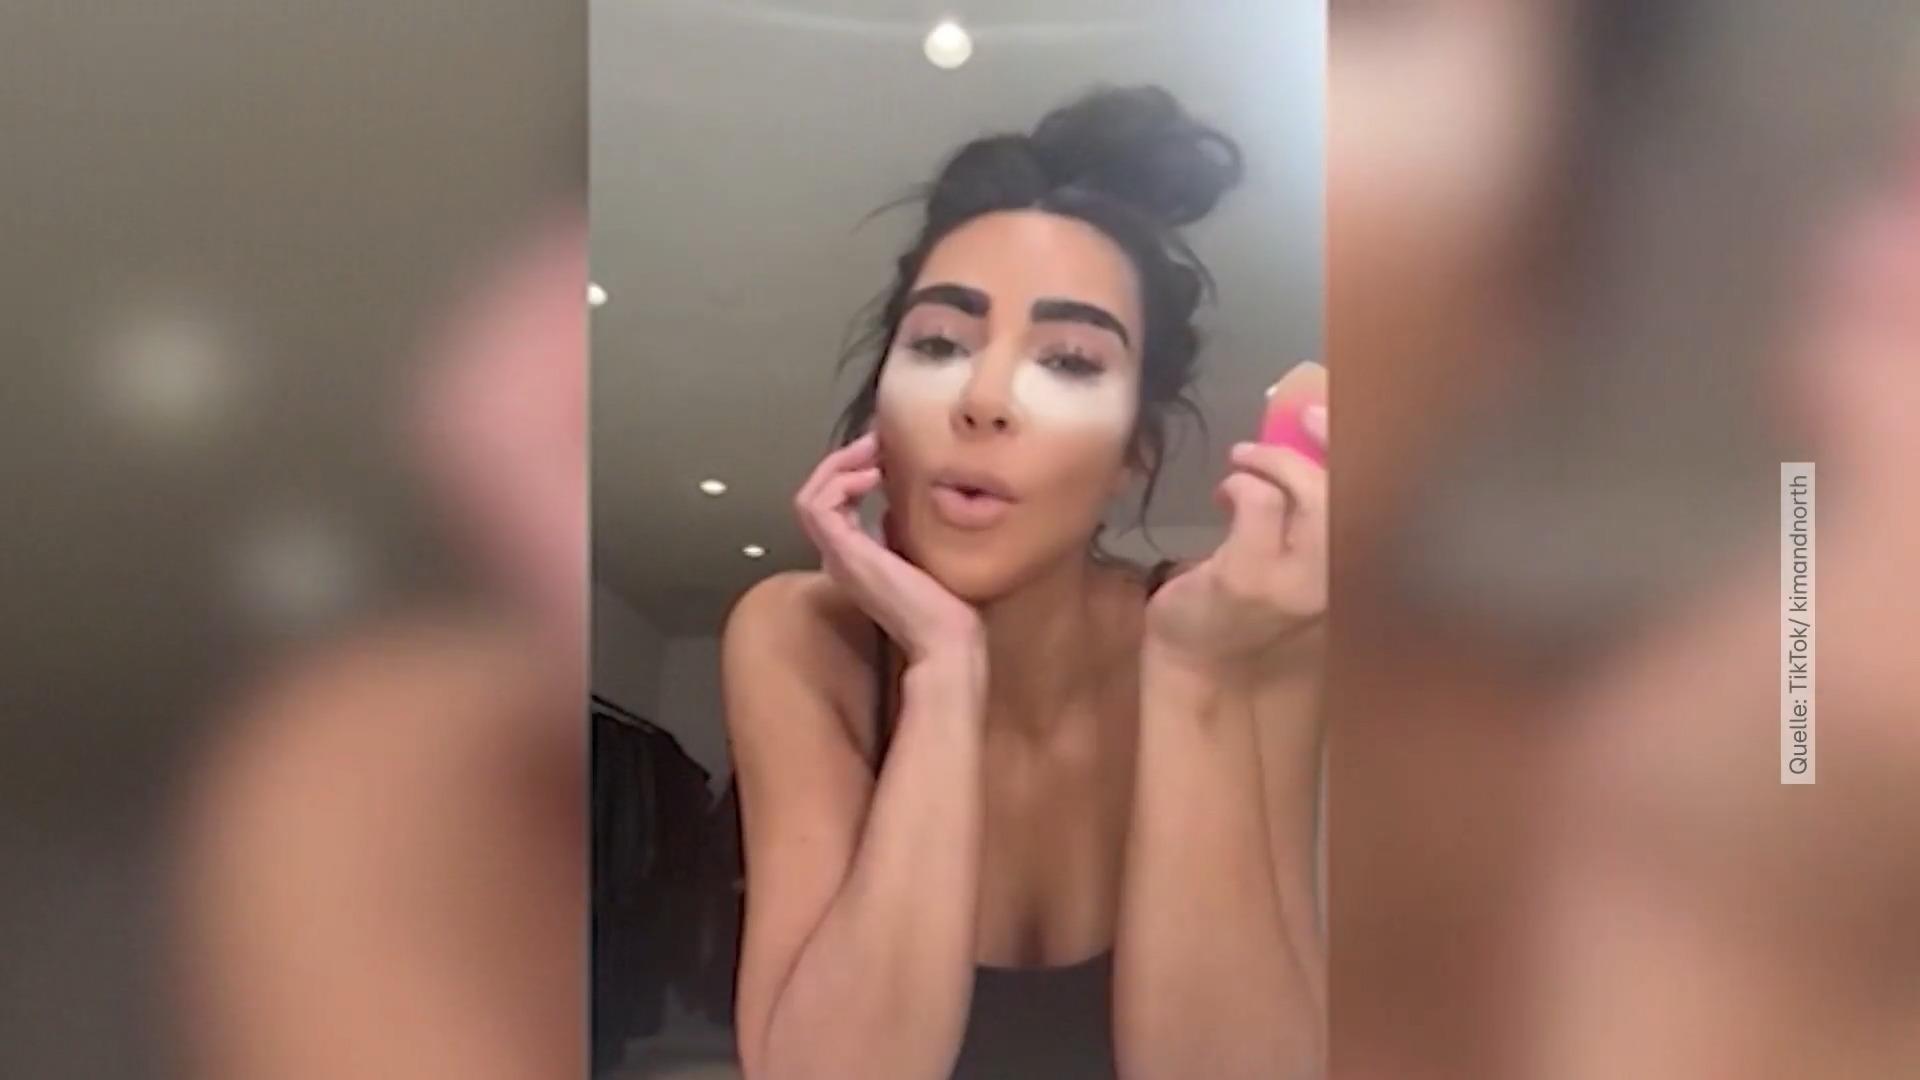 Kim Kardashian without makeup and filters Rare sight!